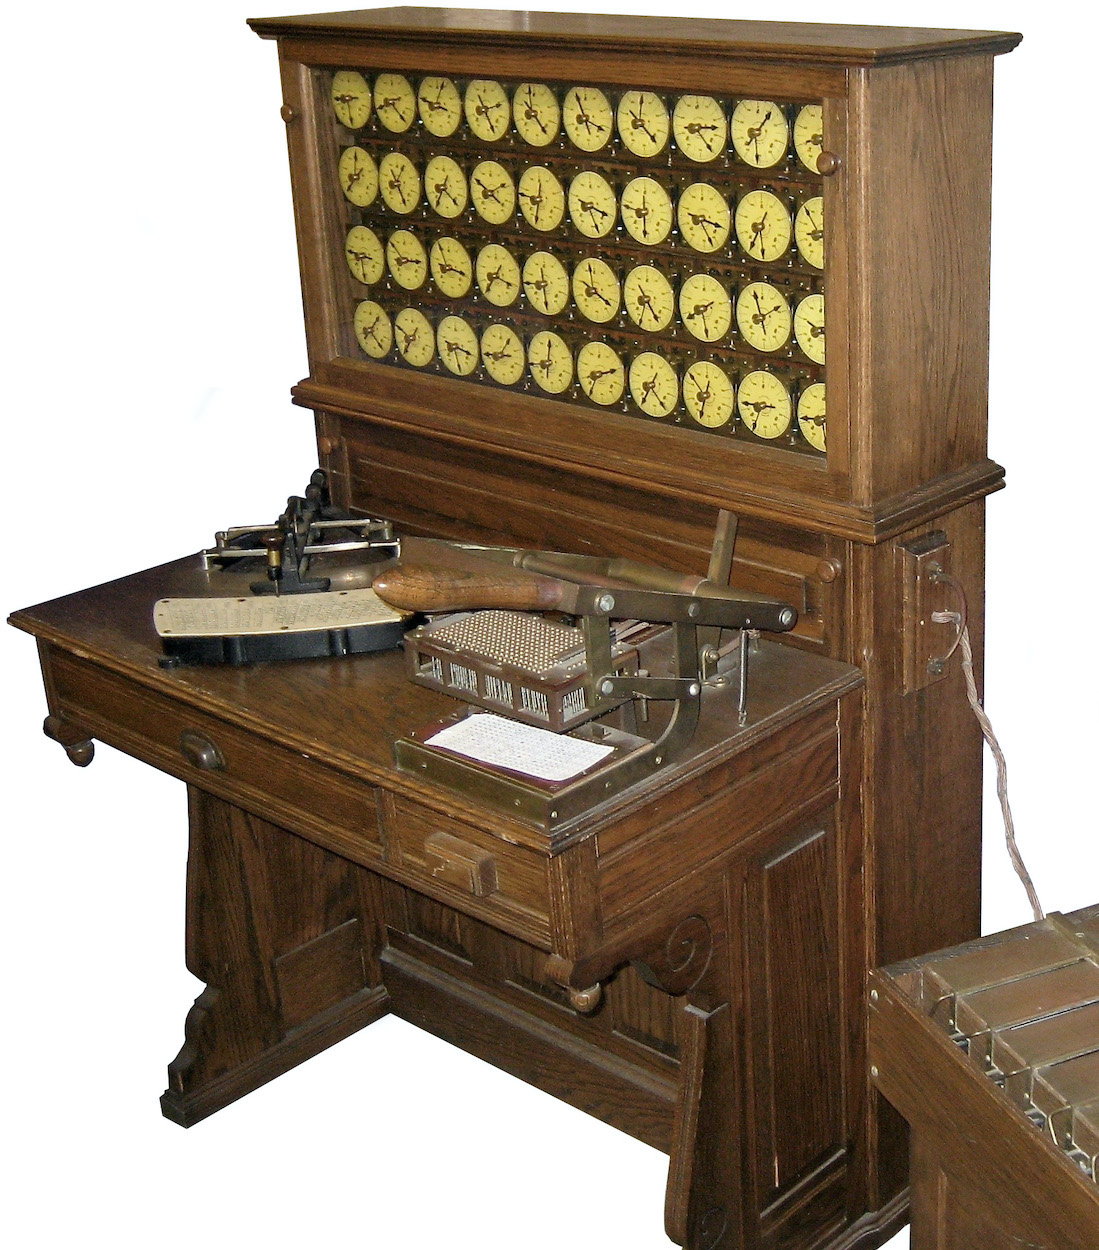 Nachbau von Lochkartengeräten von Hollerith, oben die Zähluhren, auf dem Tisch links ein Lochungsgerät, rechts die Vorrichtung zum Abtasten der Lochkarten – Bild: Adam Schuster (CC BY 2.0), Ausschnitt, freigestellt